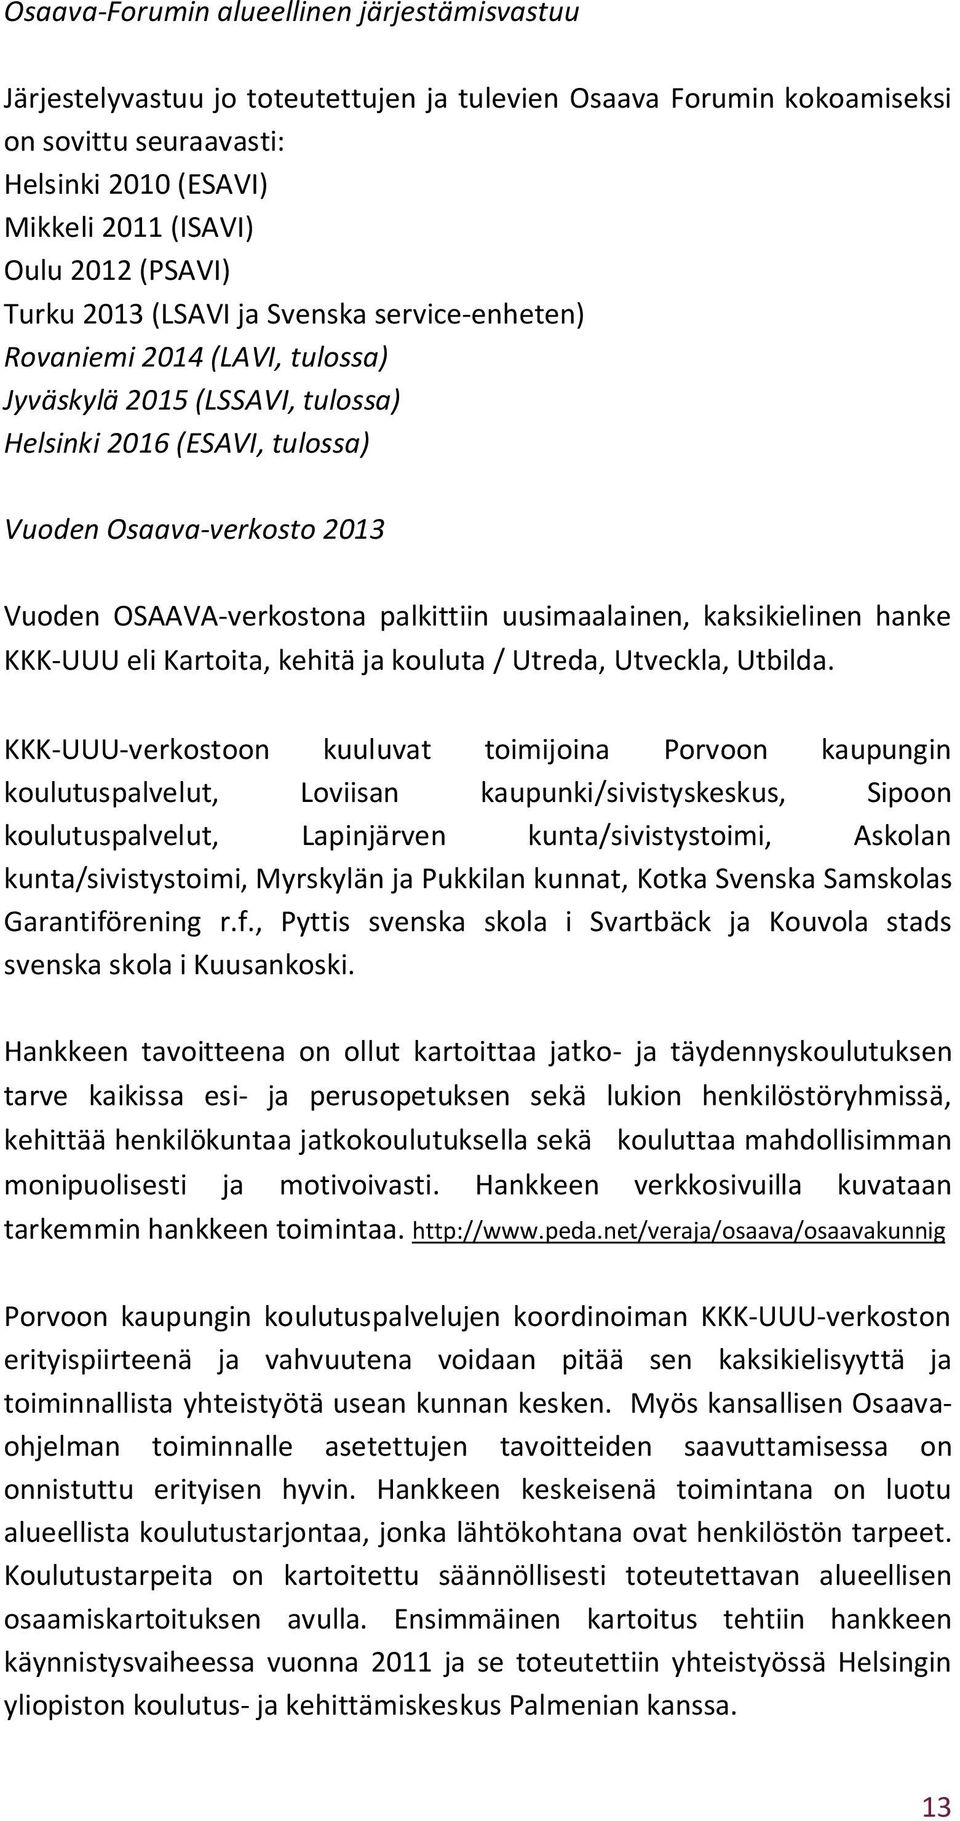 OSAAVA-verkostona palkittiin uusimaalainen, kaksikielinen hanke KKK-UUU eli Kartoita, kehitä ja kouluta / Utreda, Utveckla, Utbilda.